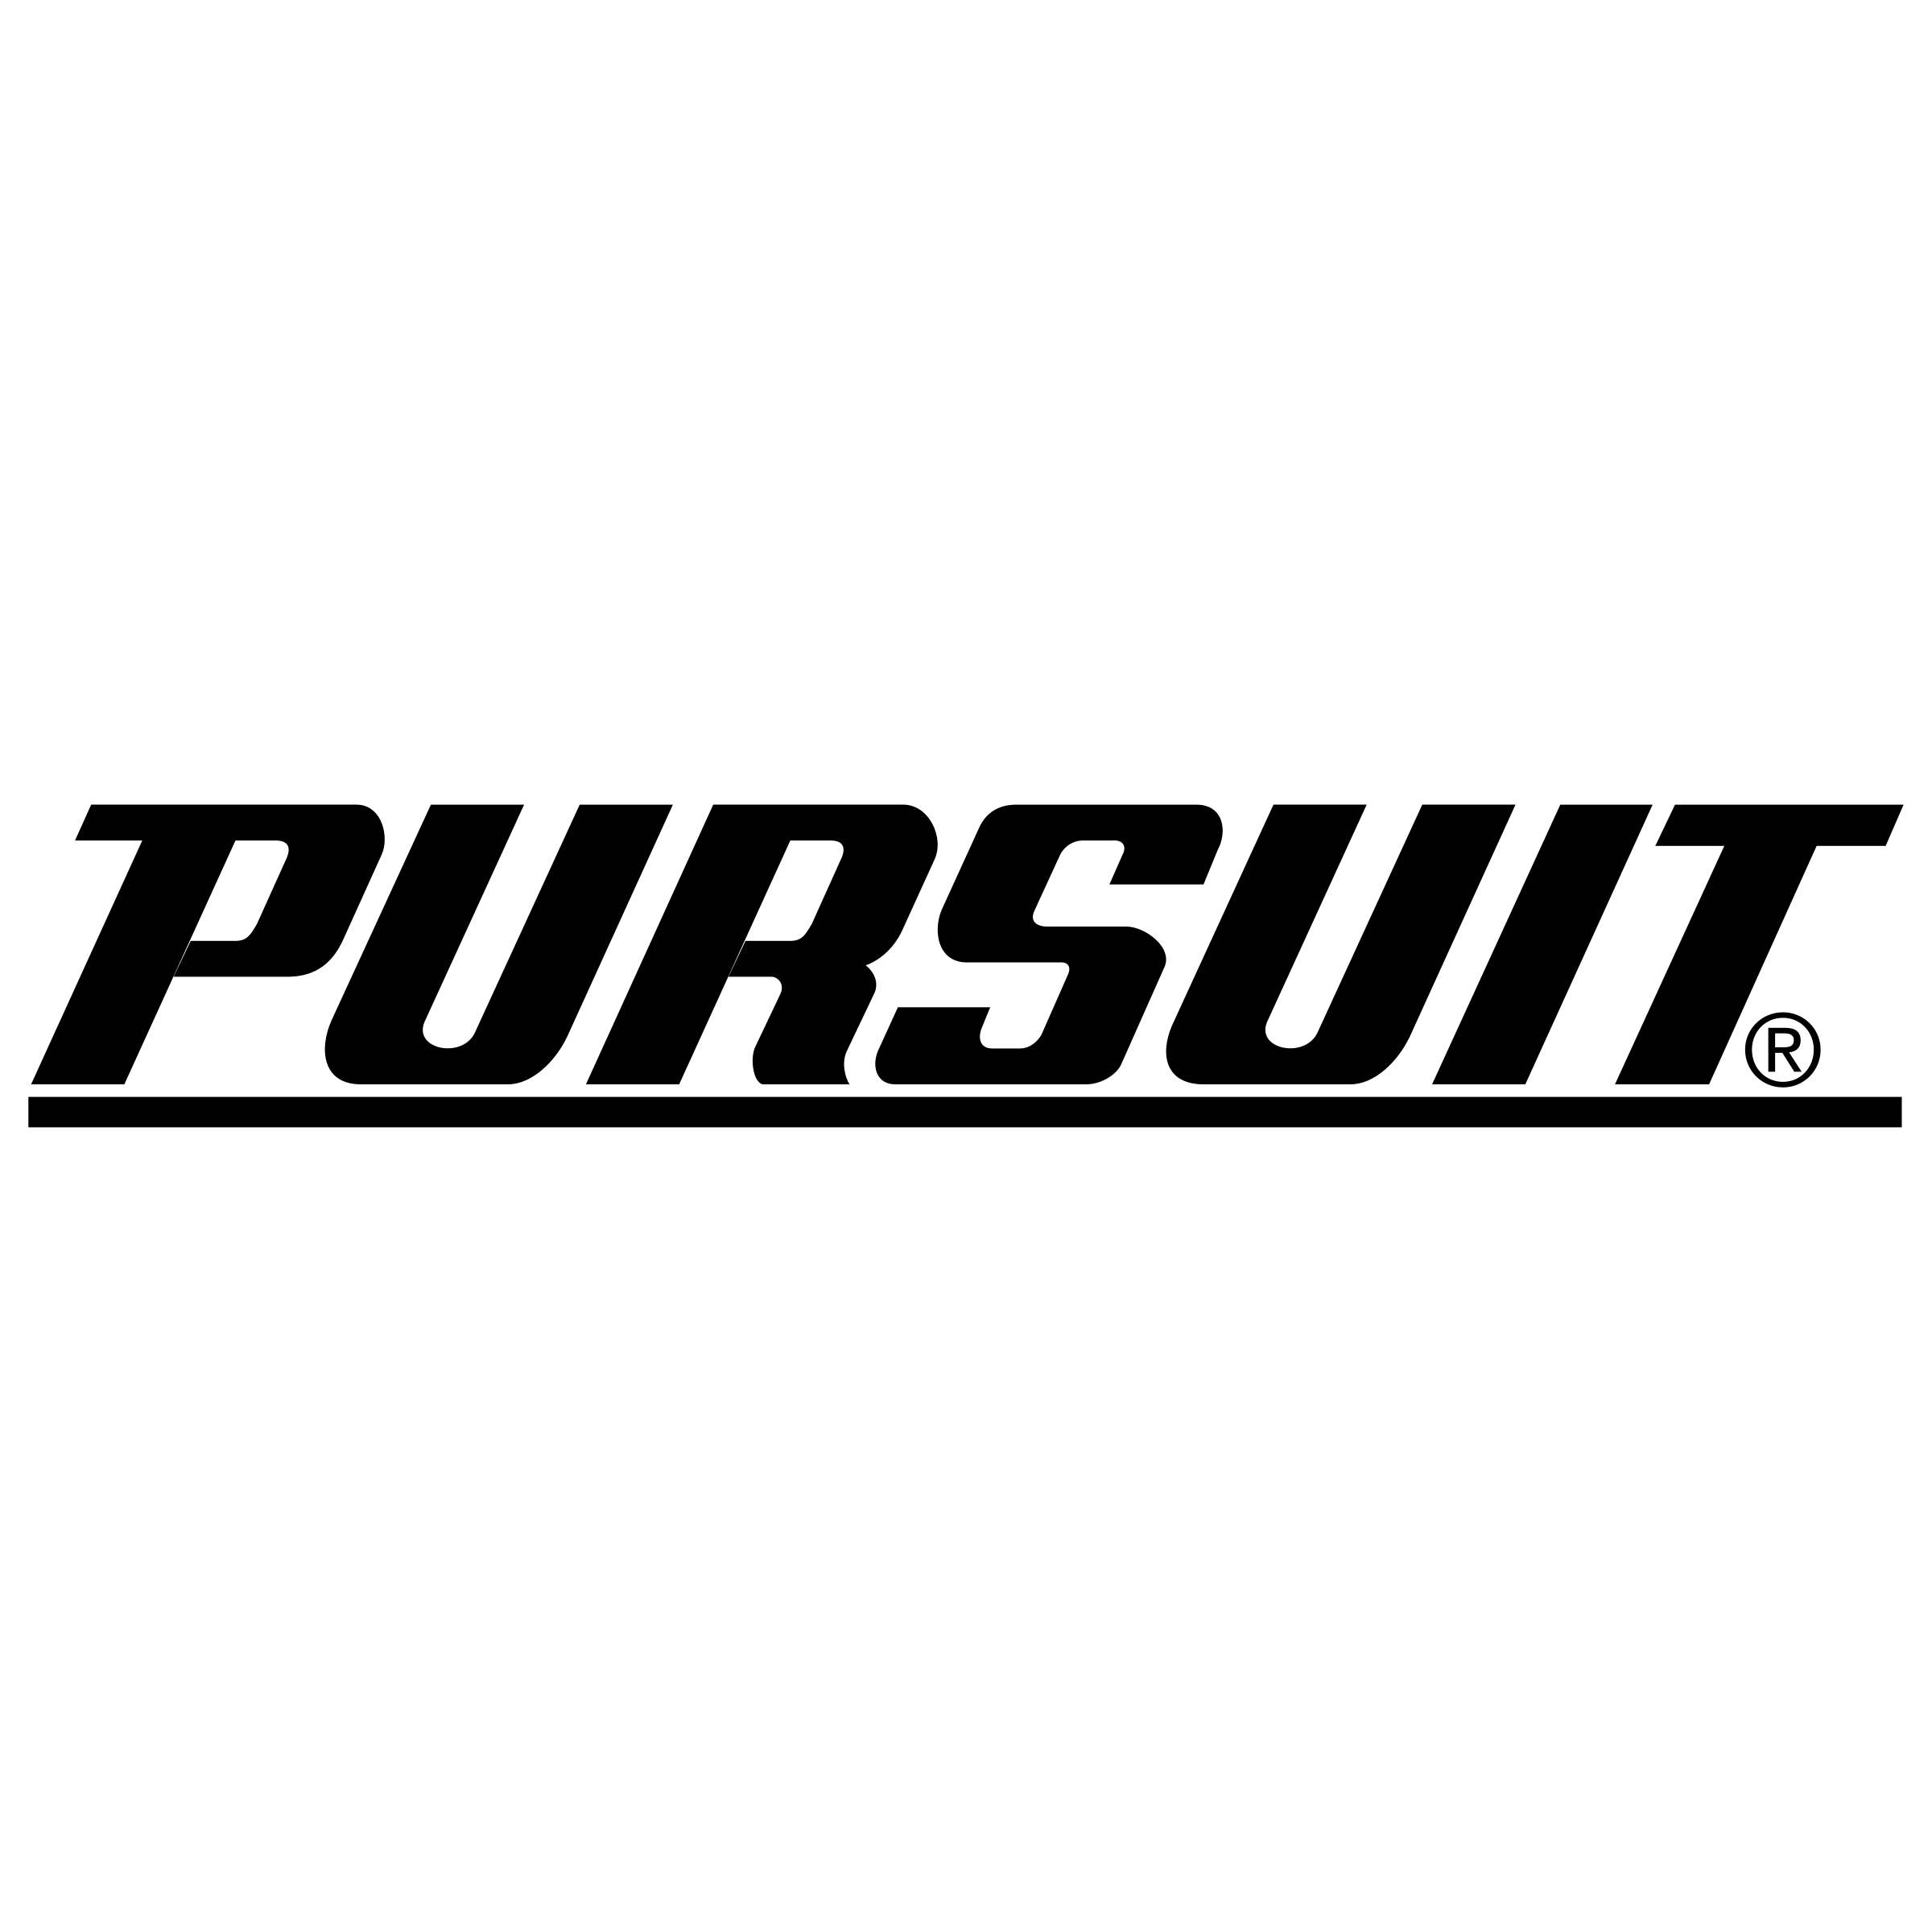 Pursuit Logo - Pursuit Logo PNG Transparent & SVG Vector - Freebie Supply